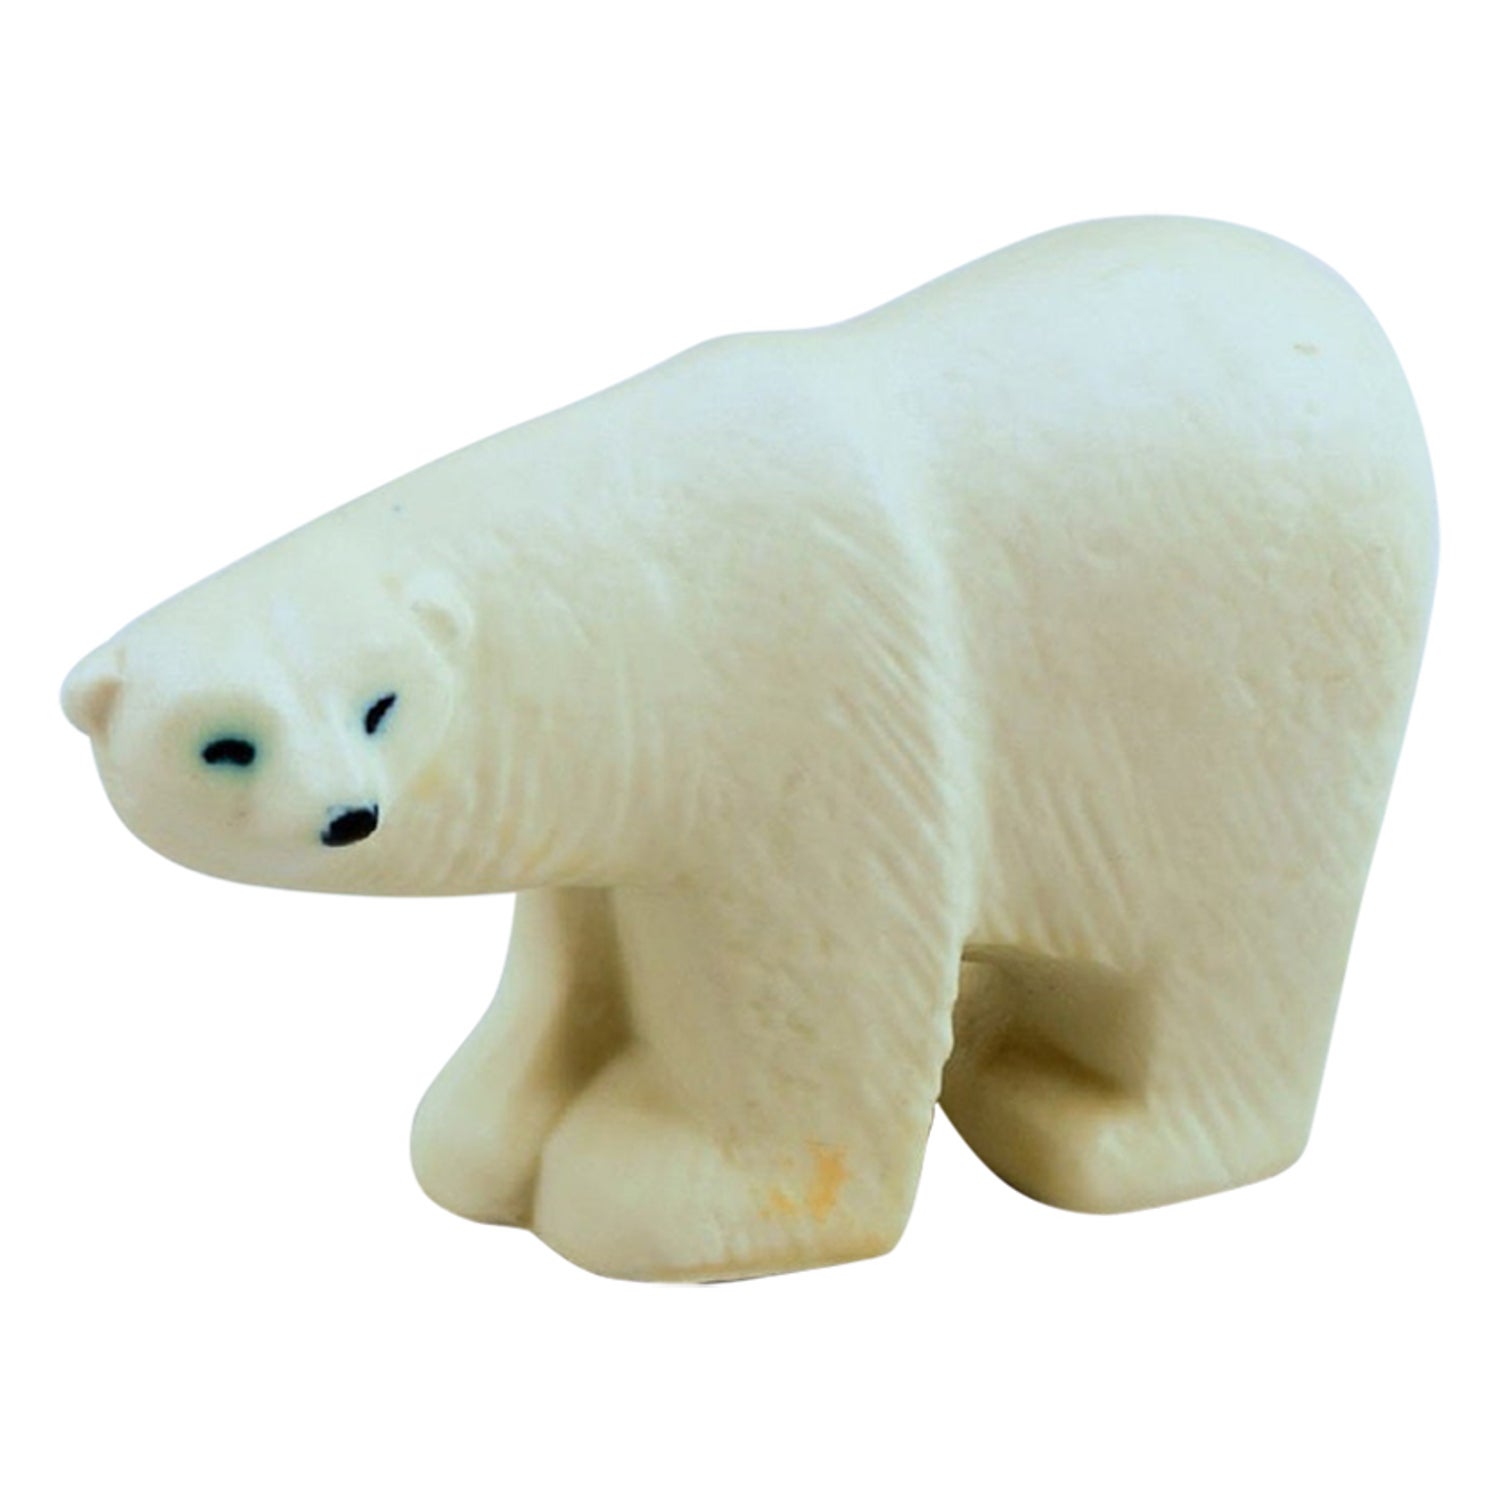 Lisa Larson for Gustavsberg. Polar bear in glazed stoneware. For Sale at  1stDibs